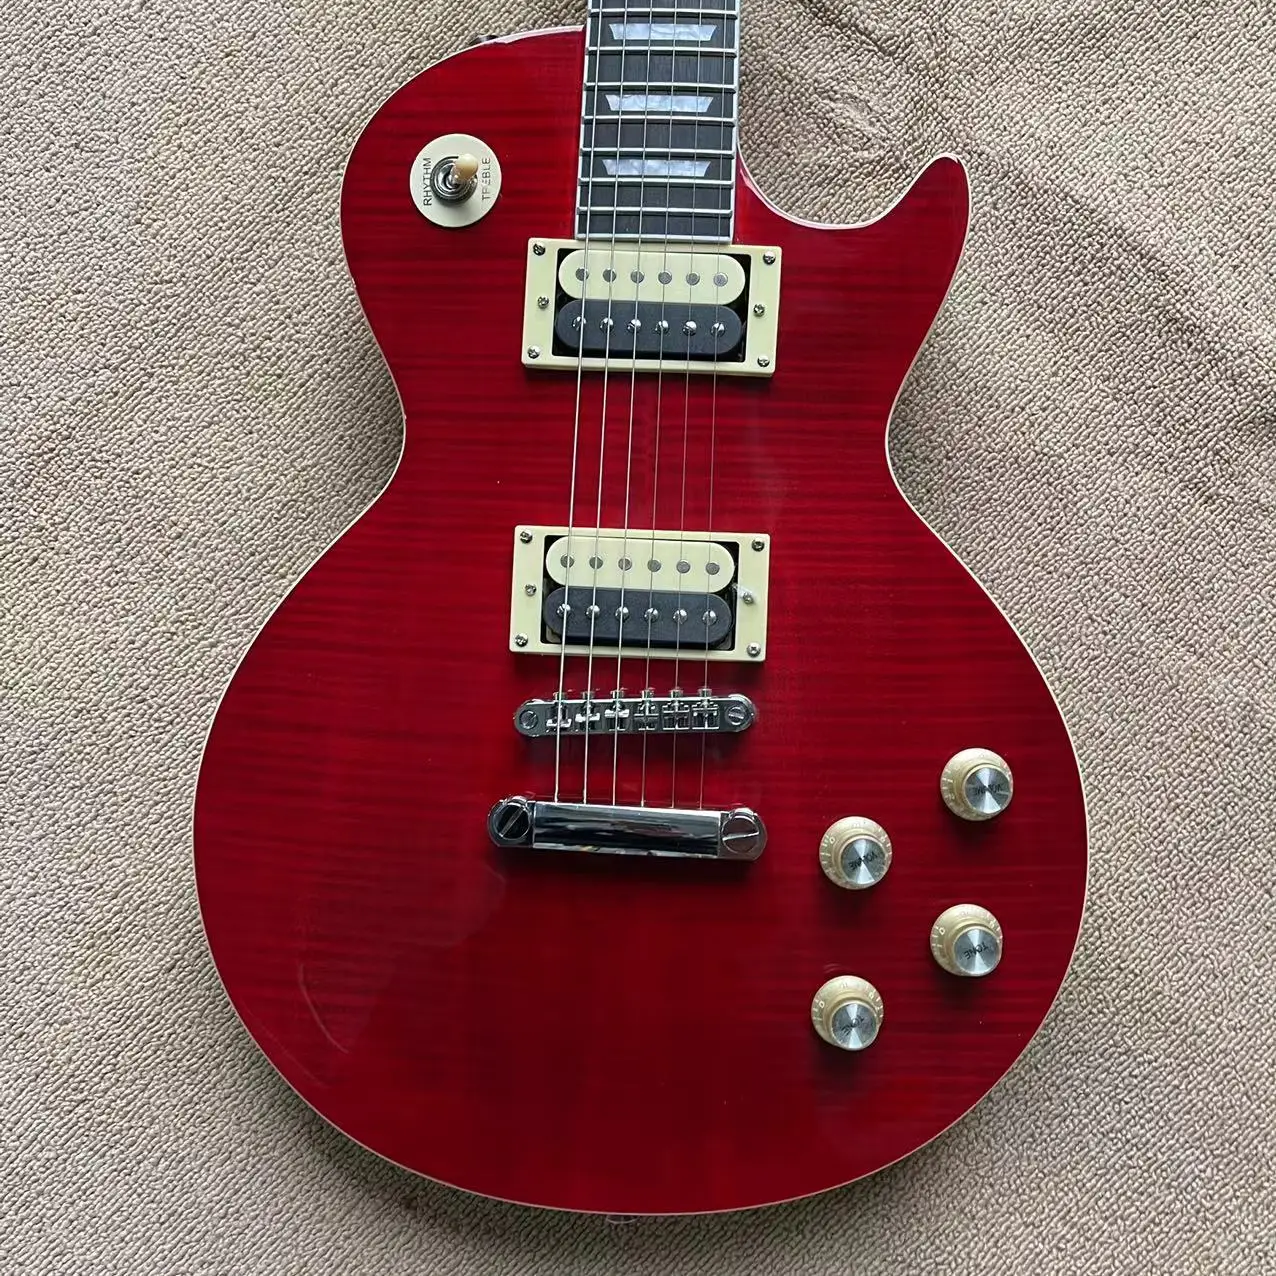 

LP all-in-one electric guitar, transparent red cross grain veneer mahogany body, zebra pickup, LP string bridge, rosewood finger